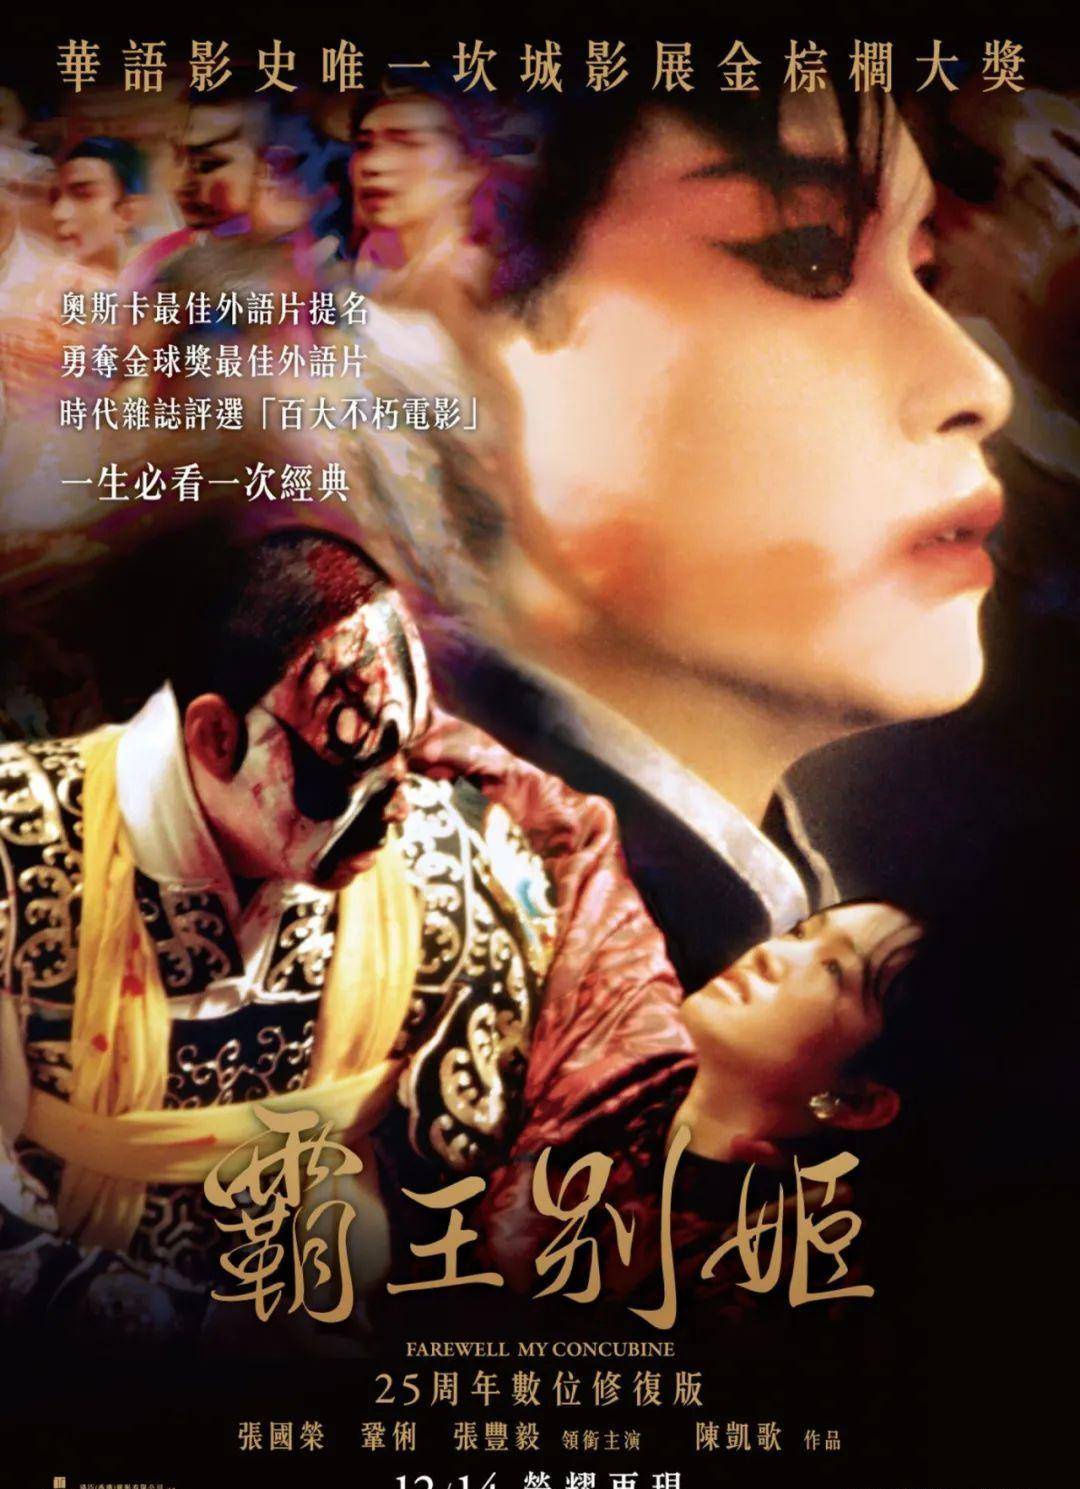 原创华语评分最高的经典电影霸王别姬张国荣演绎看一遍震撼一遍